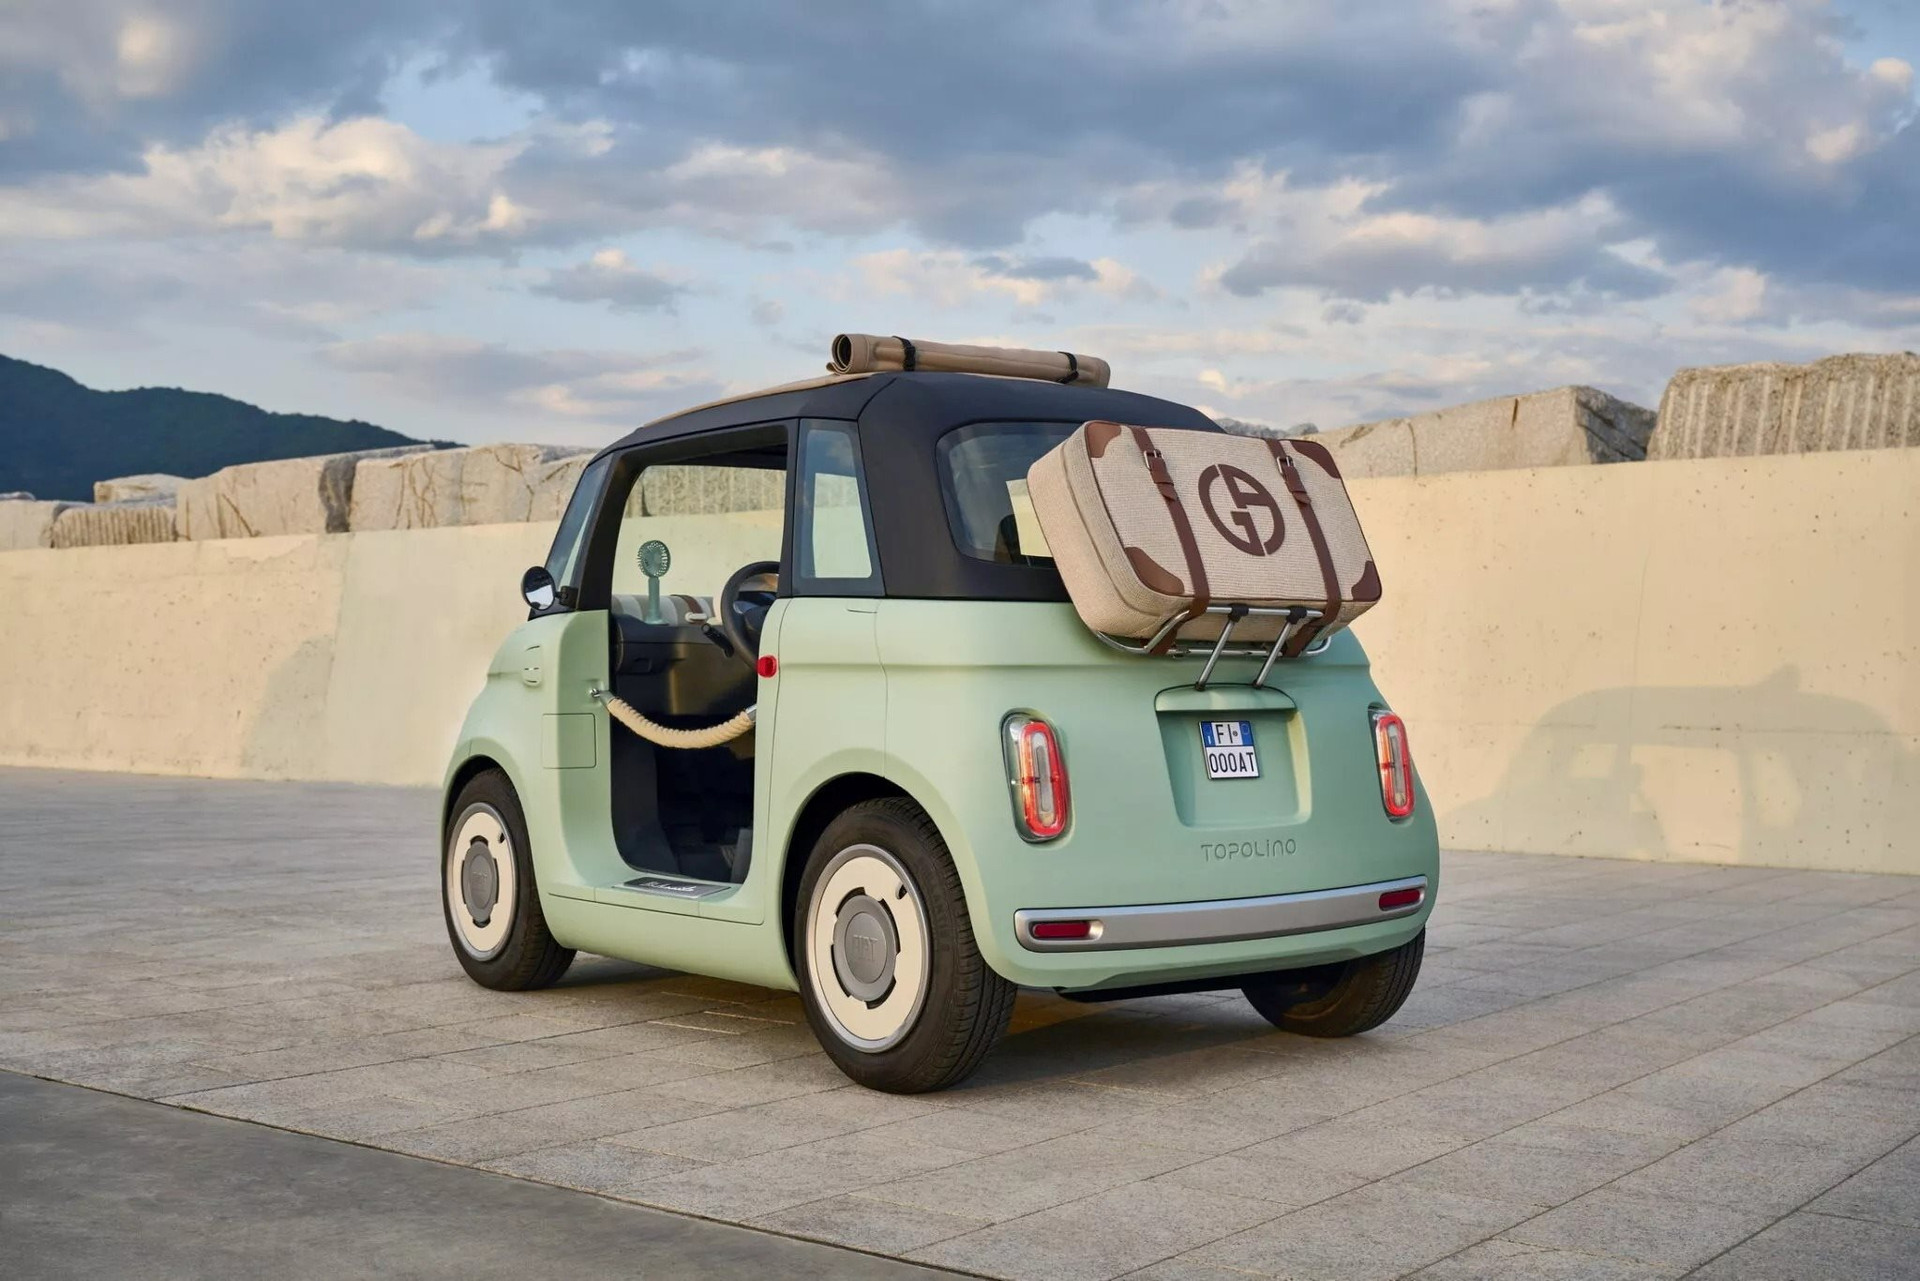 Đây có phải đỉnh cao của ô tô điện mini dạo phố: Fiat Topolino tầm hoạt động 75 km, trẻ 14 tuổi cũng lái được - Ảnh 2.